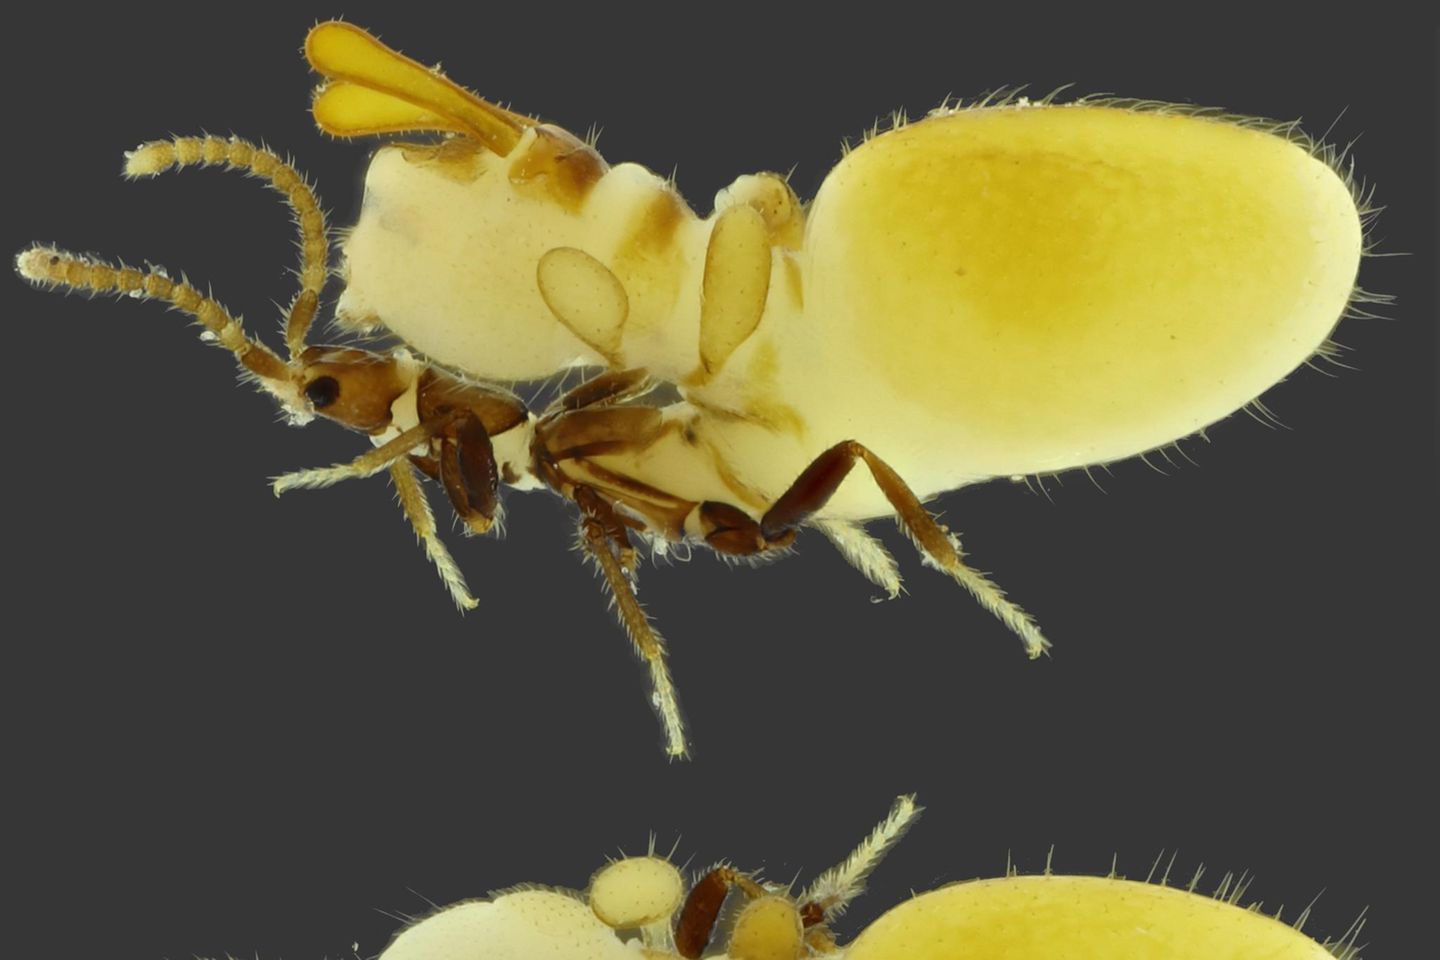 Tiere: Verrückte Mimikry: Käfer trägt Termiten-Attrappe auf Rücken